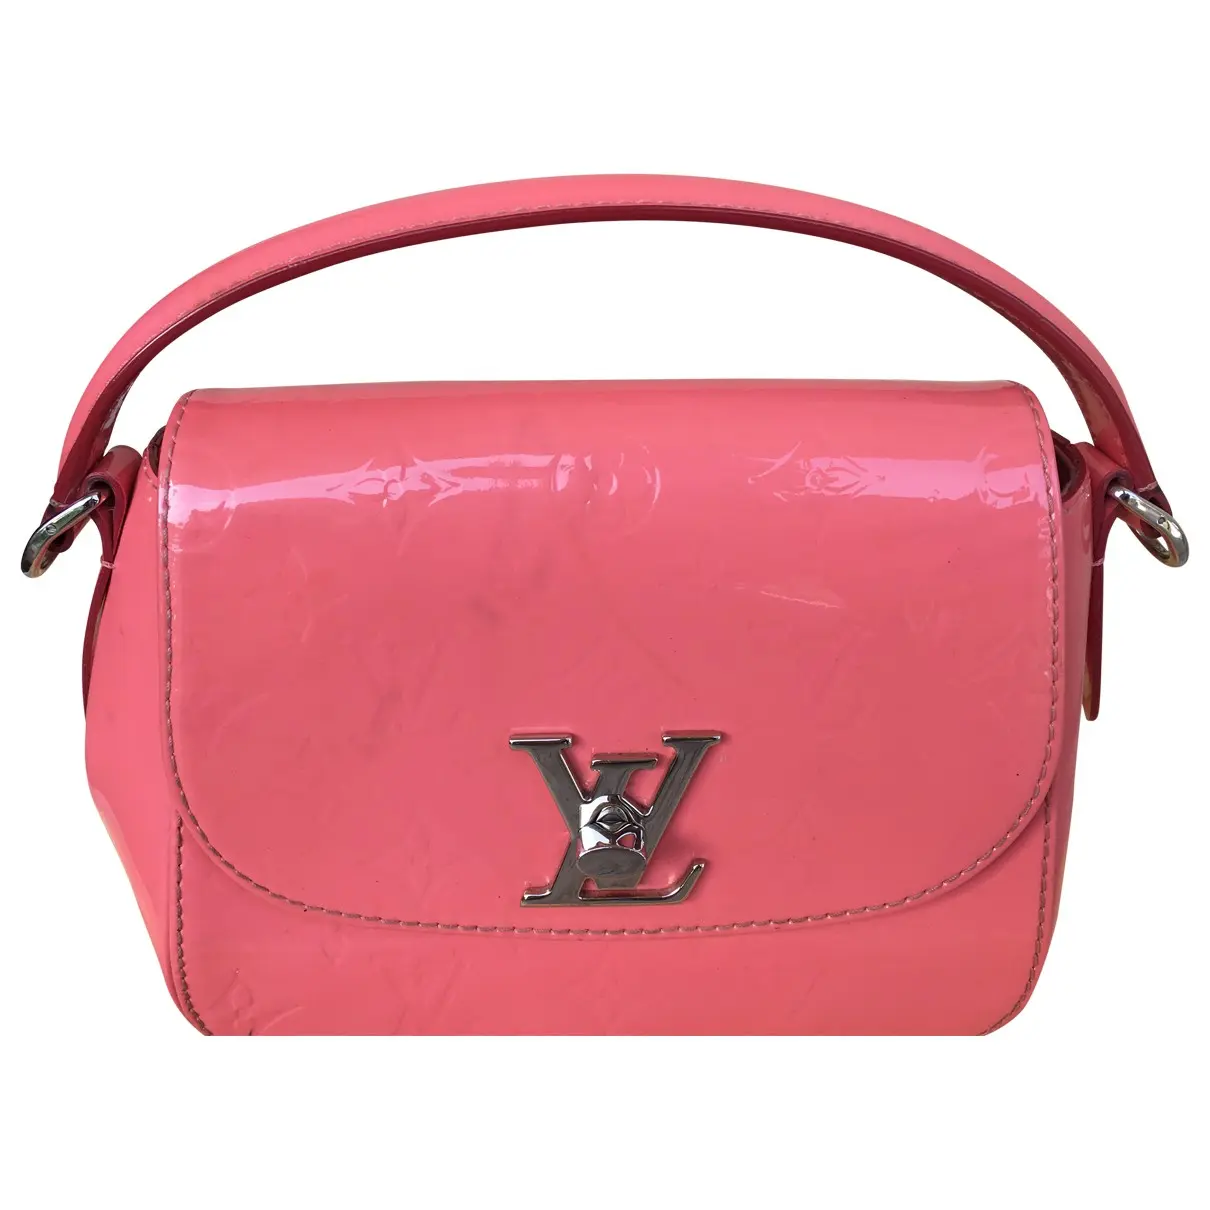 Pasadena patent leather handbag Louis Vuitton